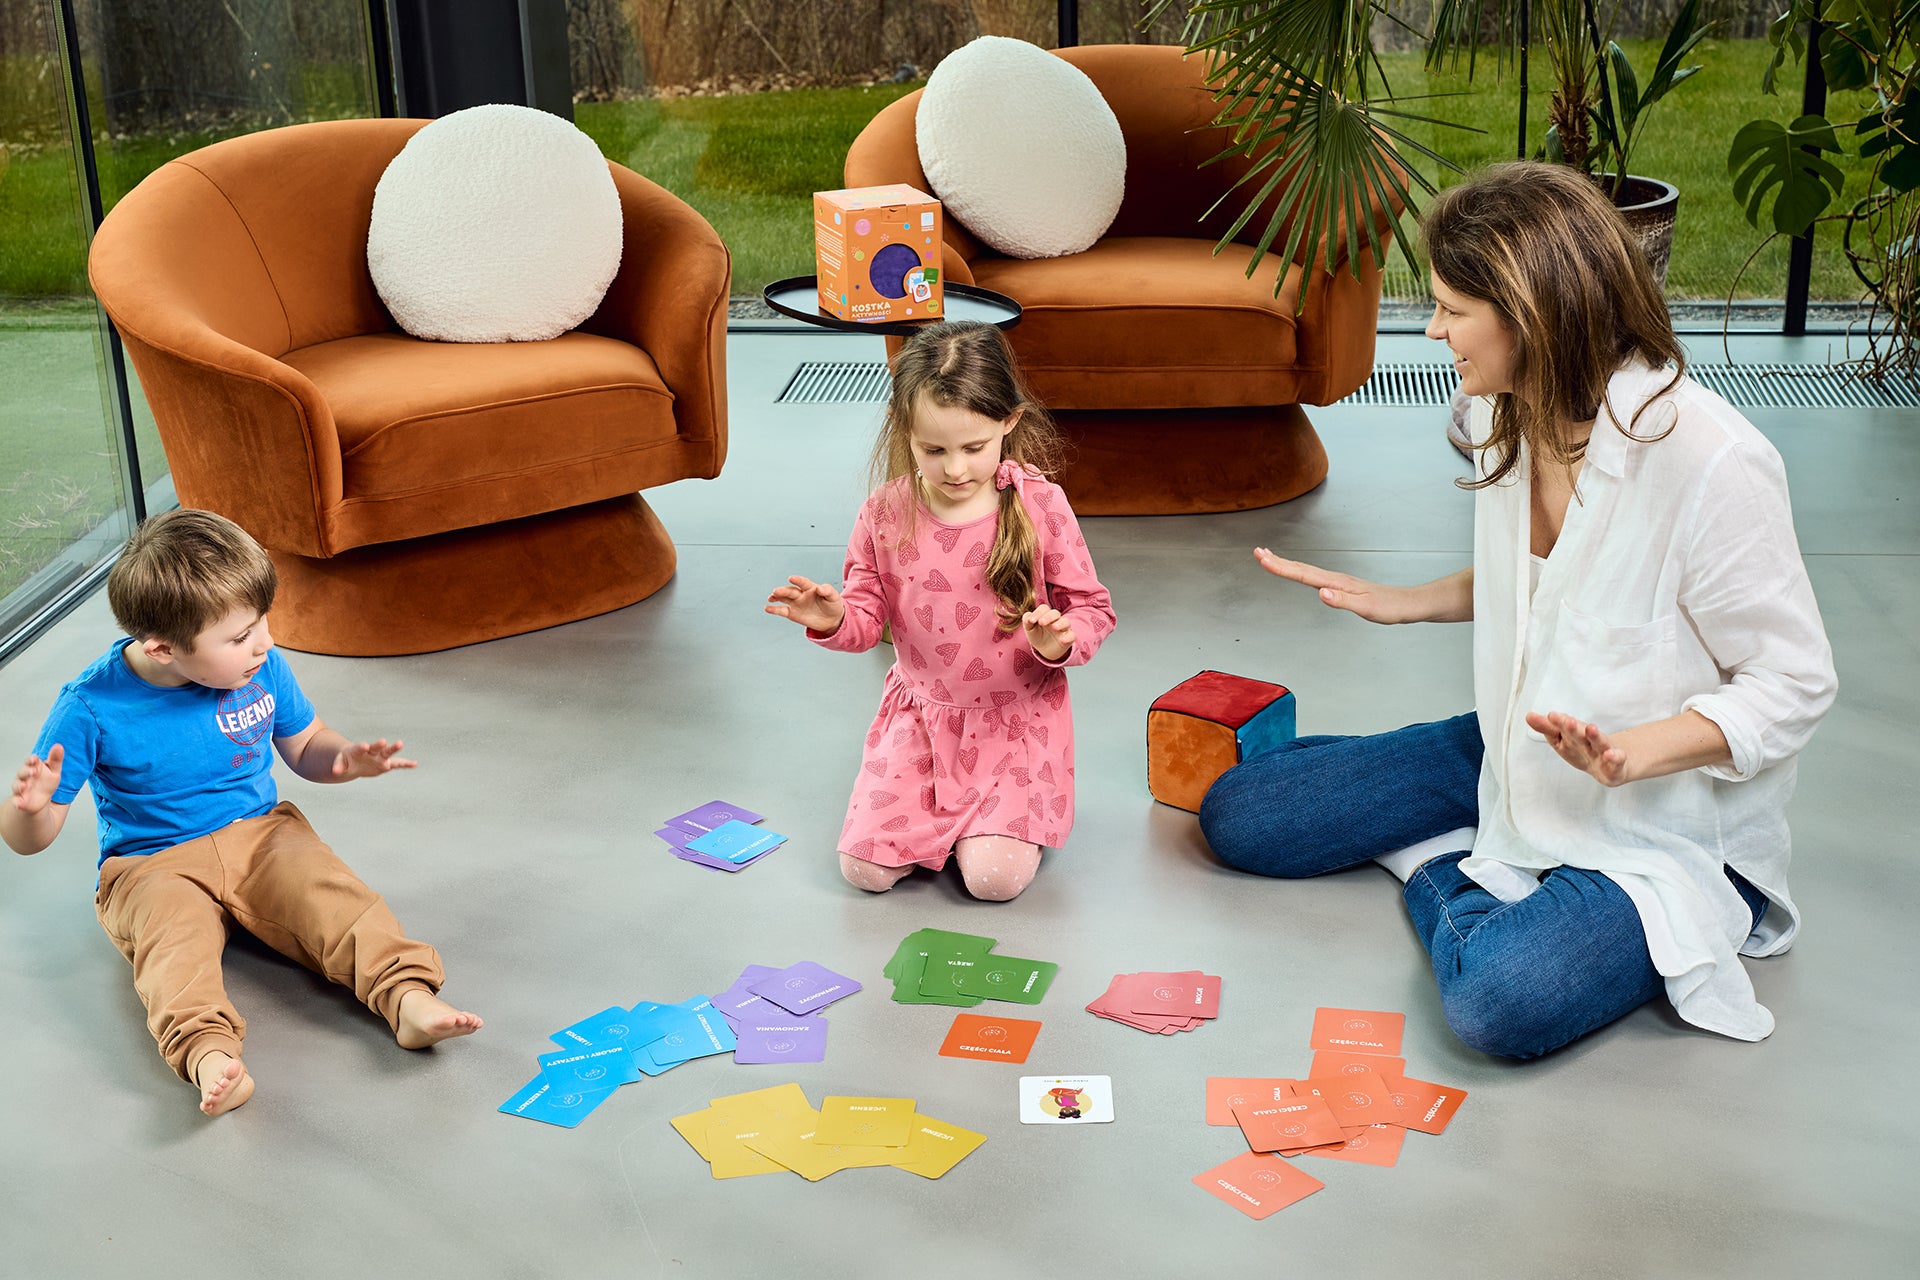 Na zdjęciu widocznych dwoje dzieci - chłopiec i dziewczynka - oraz kobieta. Wszyscy siedzą na podłodze i grają w grę "Kostka aktywności - nauka przez zabawę"